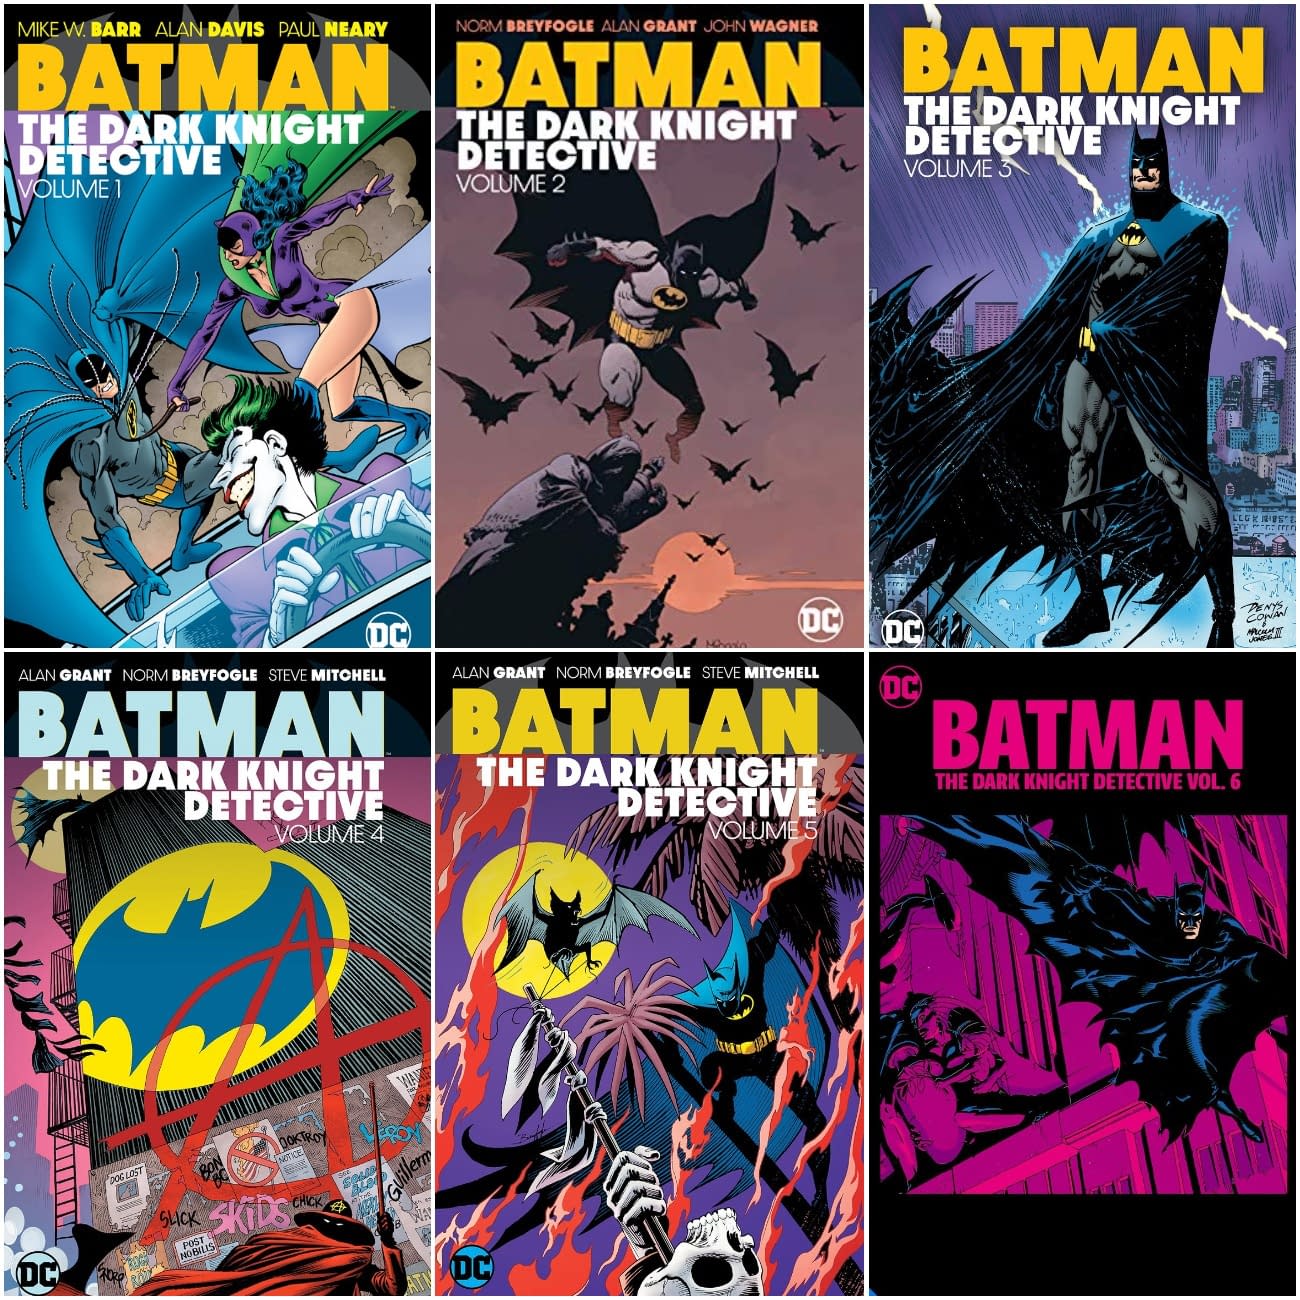 DC Comics, Please Fix Your Batman Dark Knight Detective Vol 6 Cover